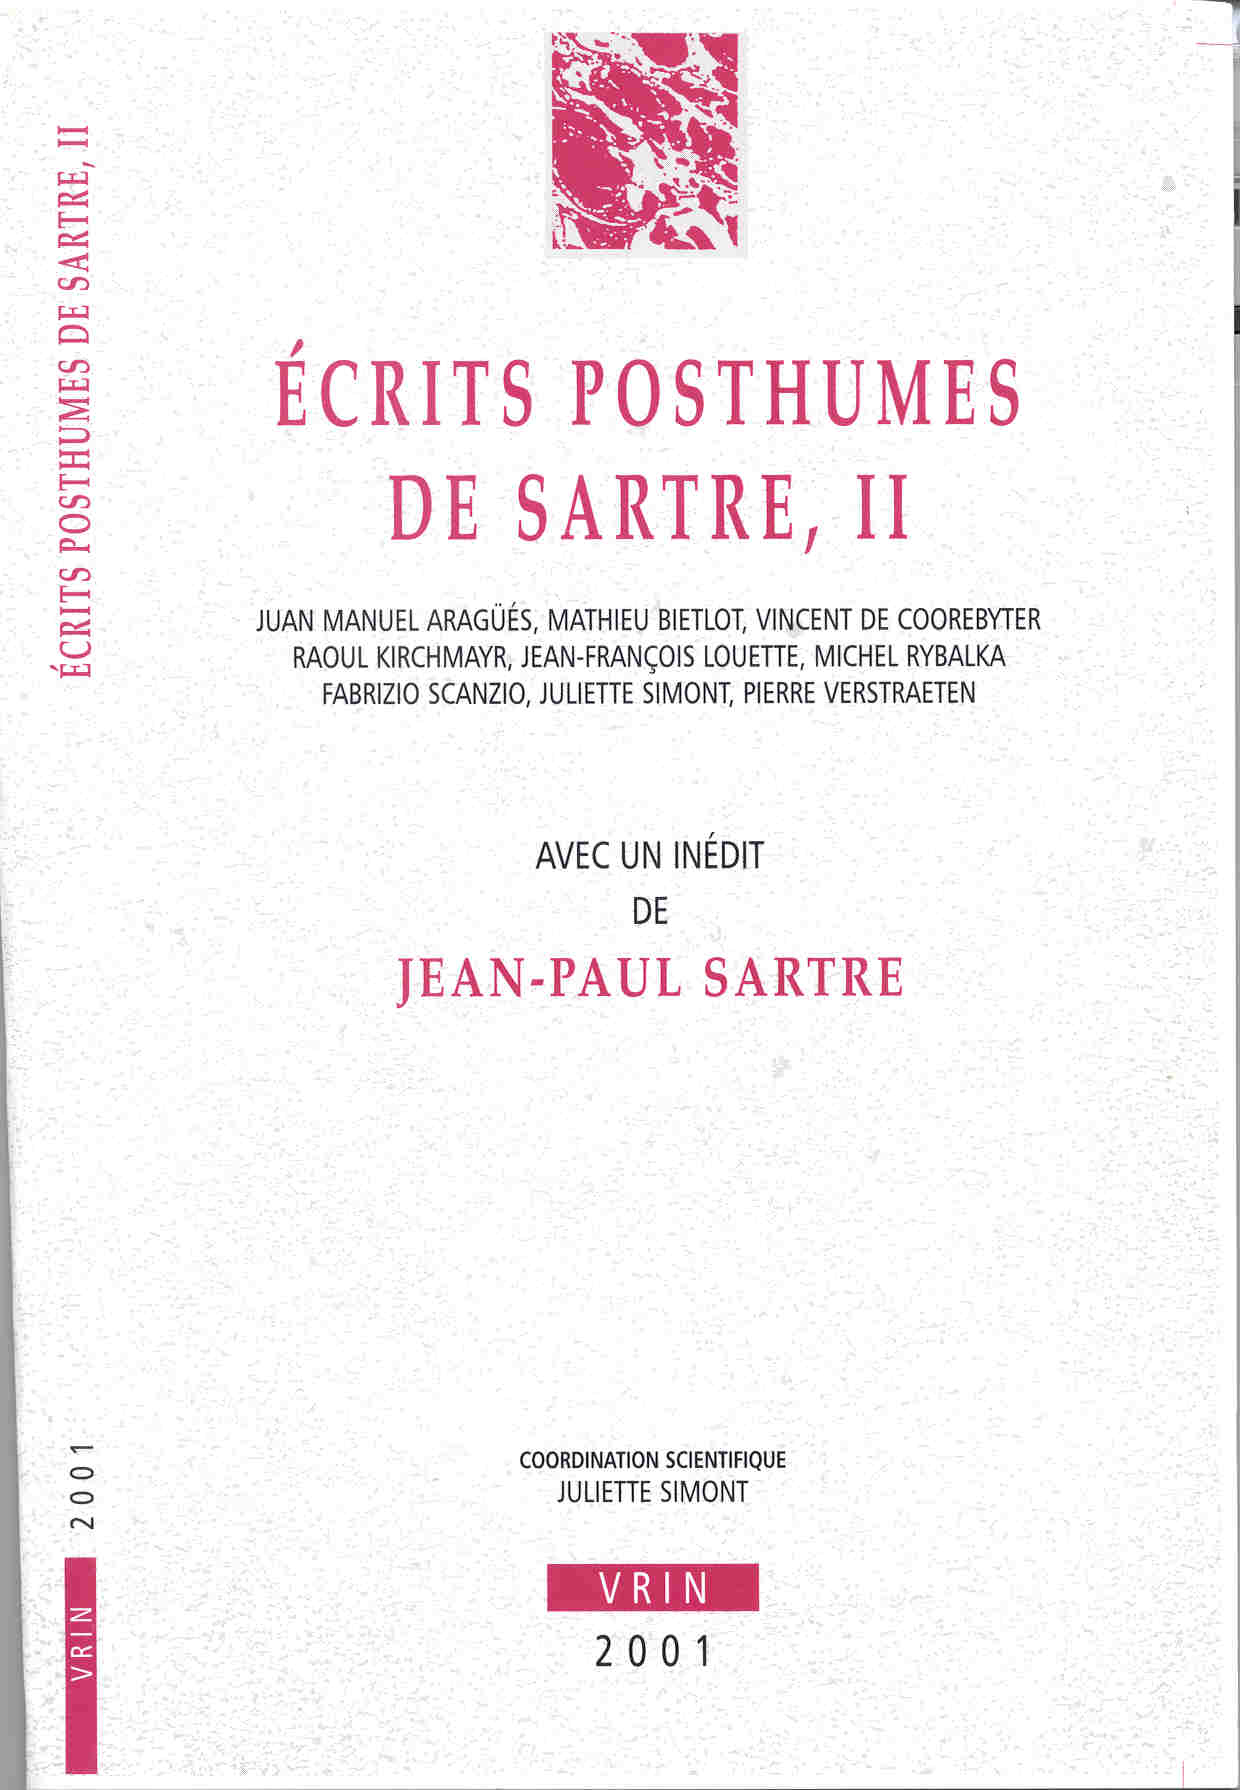 ECRITS POSTHUMES DE SARTRE II - AVEC UN INEDIT DE JEAN-PAUL SARTRE